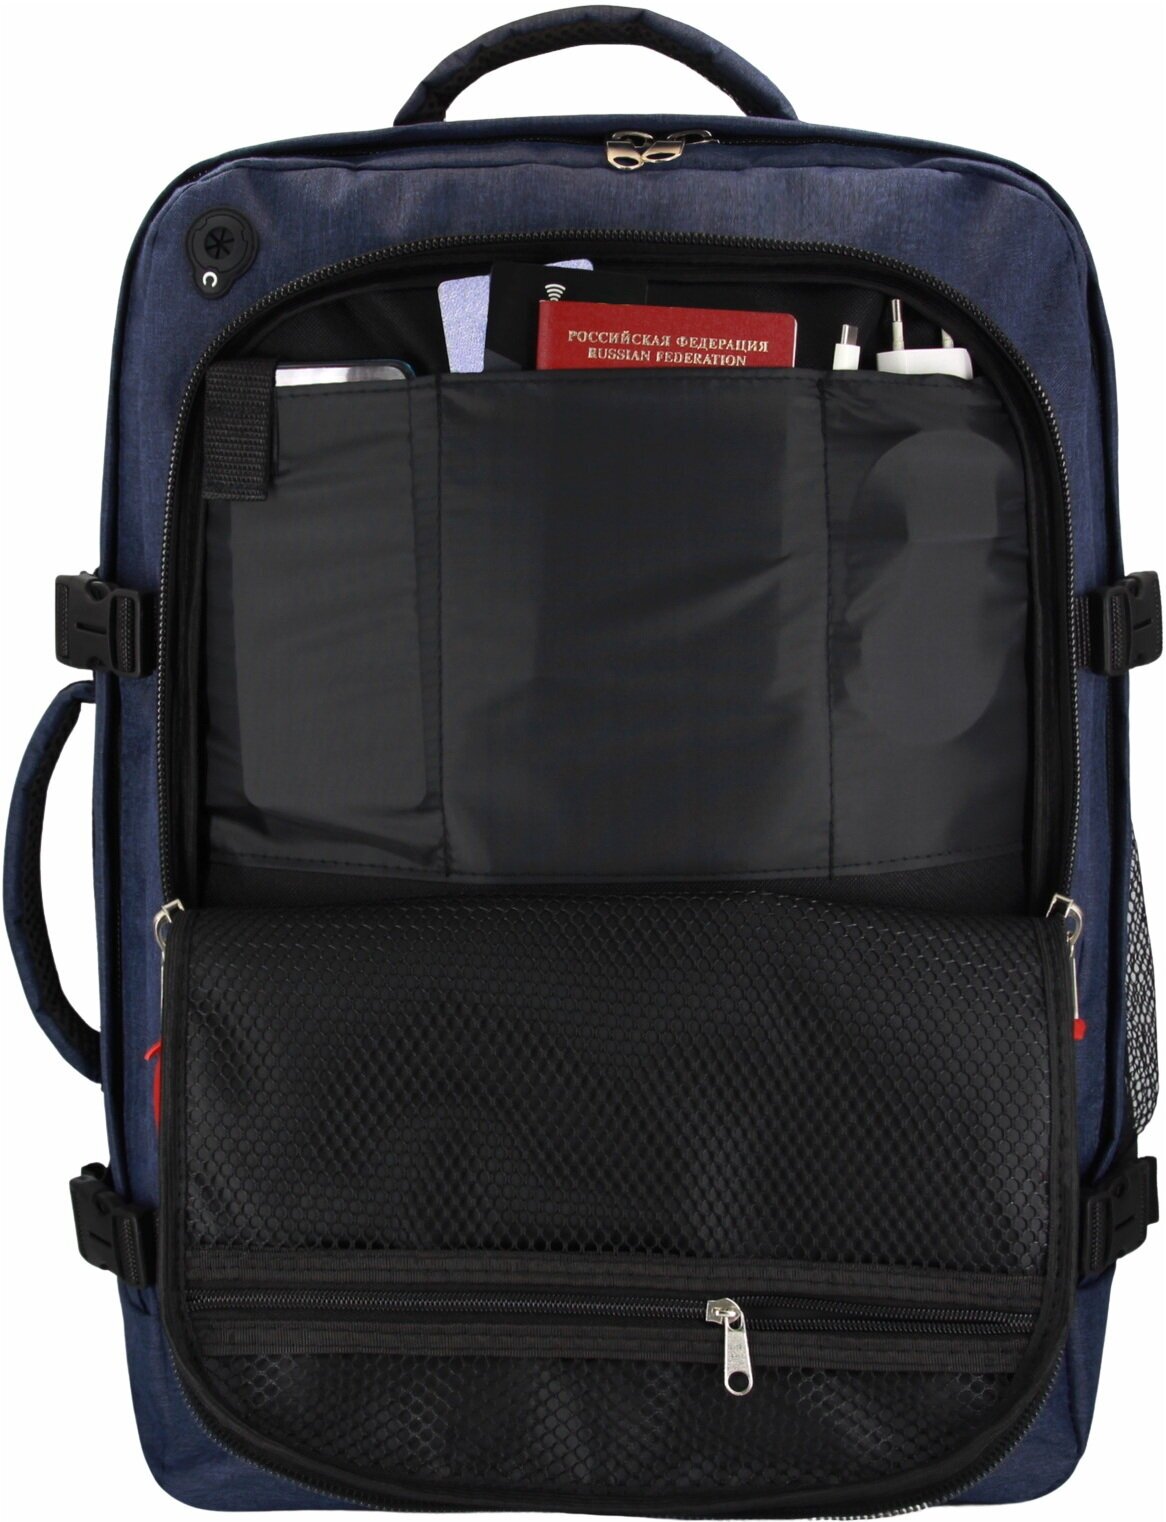 Сумка дорожная сумка-рюкзак Optimum, 44 л, 55х40х20 см, ручная кладь, отделение для ноутбука, фиксирующие ремни, водонепроницаемая, синий - фотография № 8